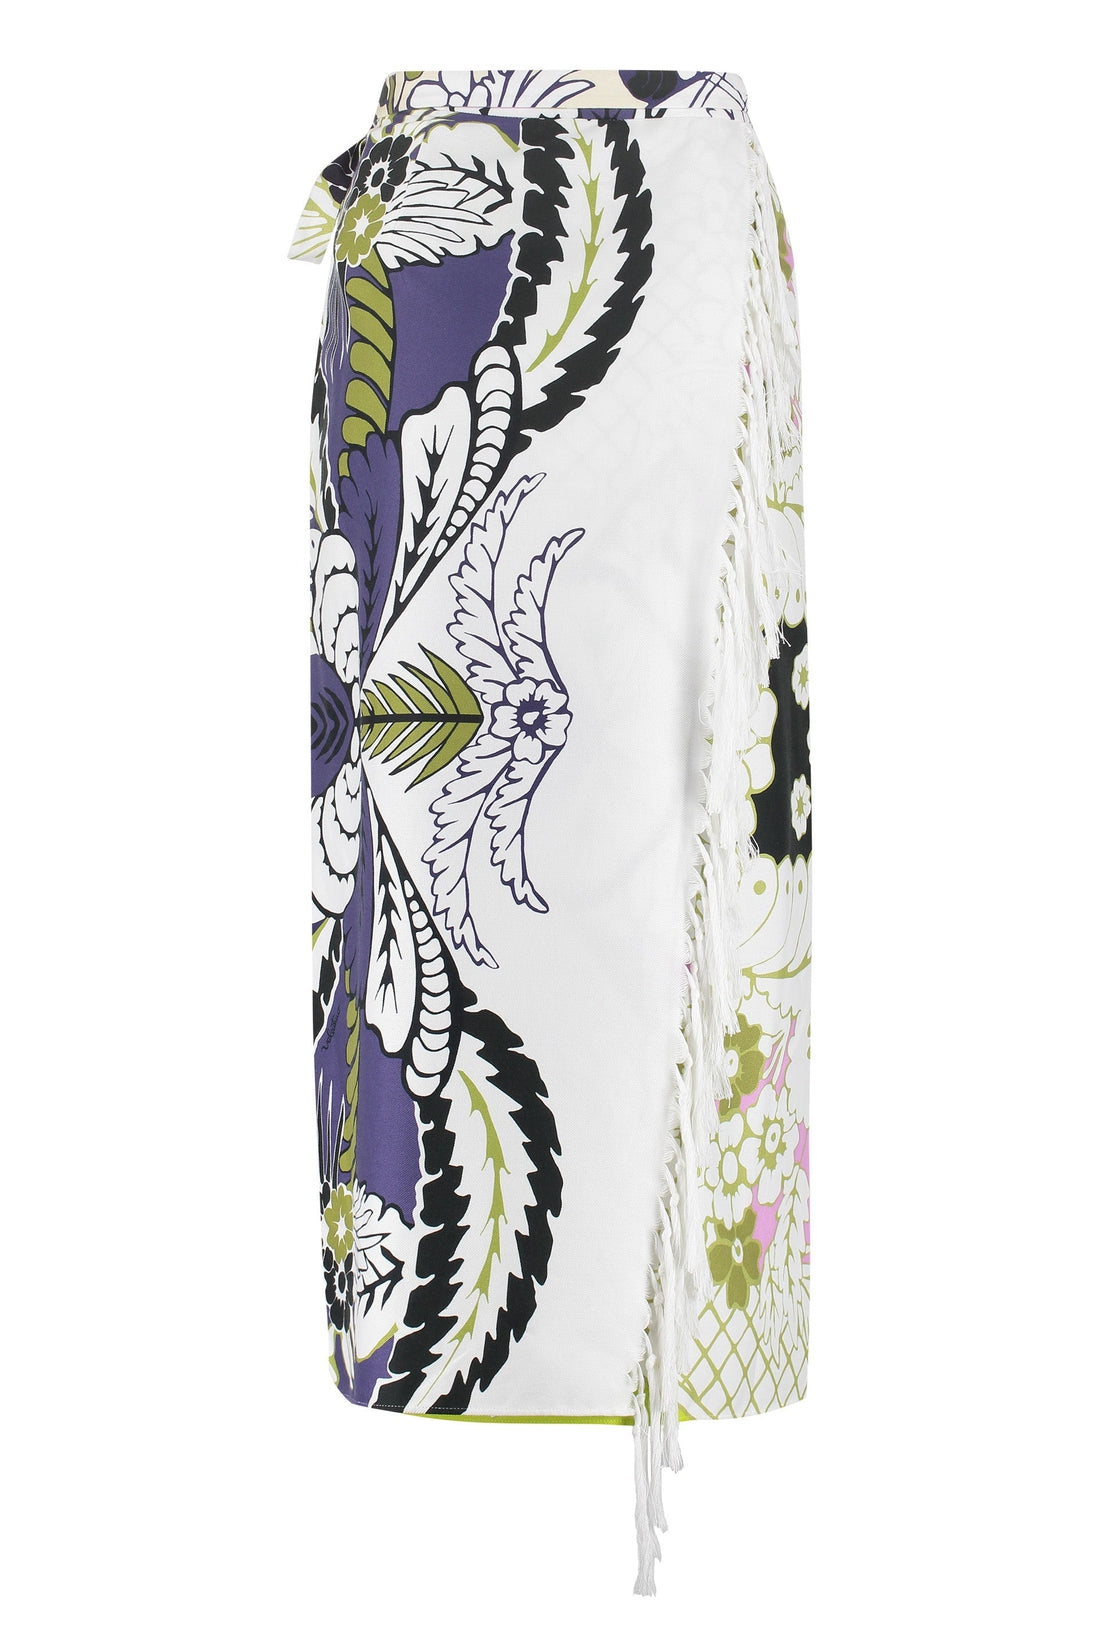 Valentino-OUTLET-SALE-Cotton wrap skirt-ARCHIVIST